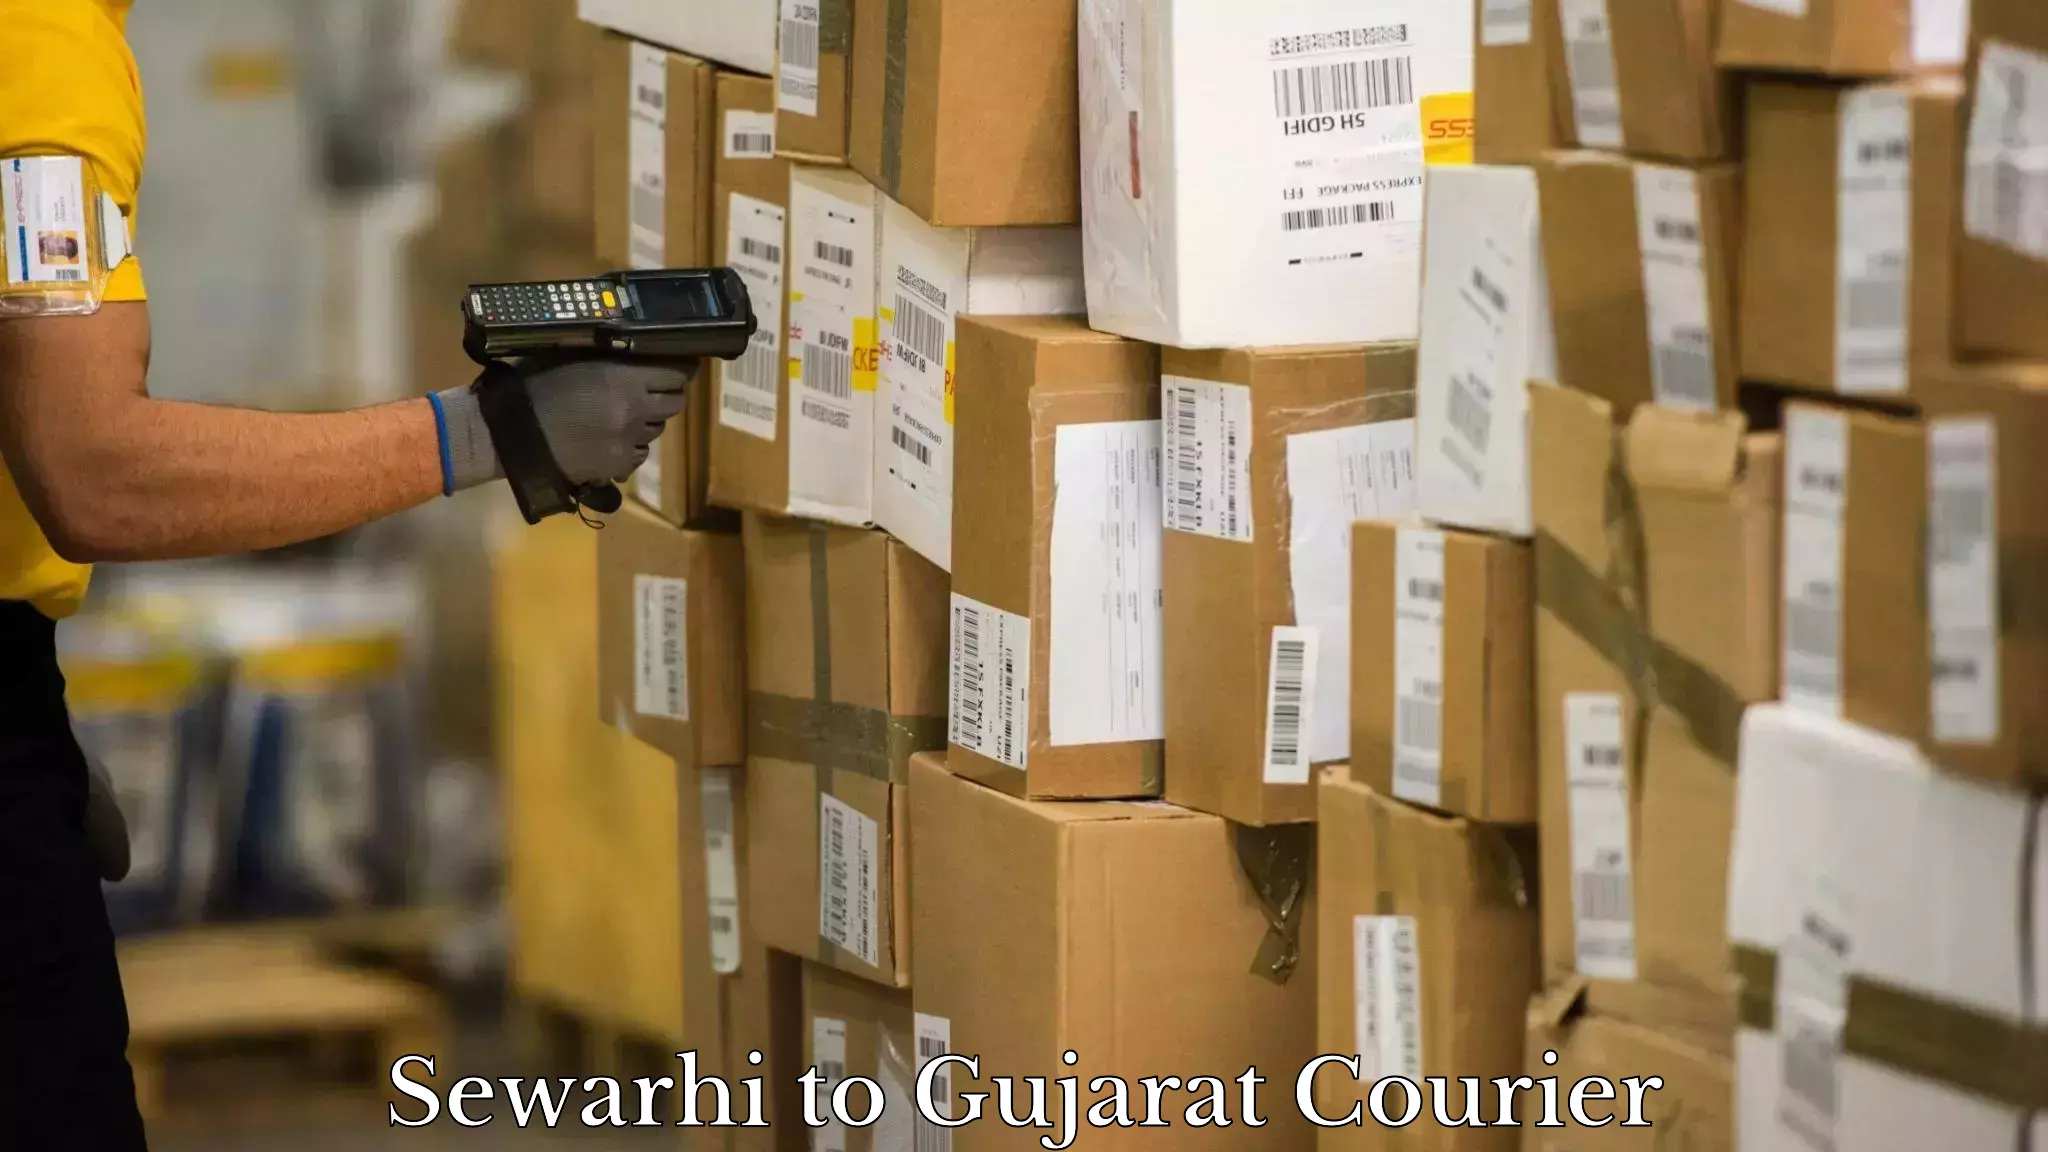 Express logistics providers Sewarhi to Gujarat